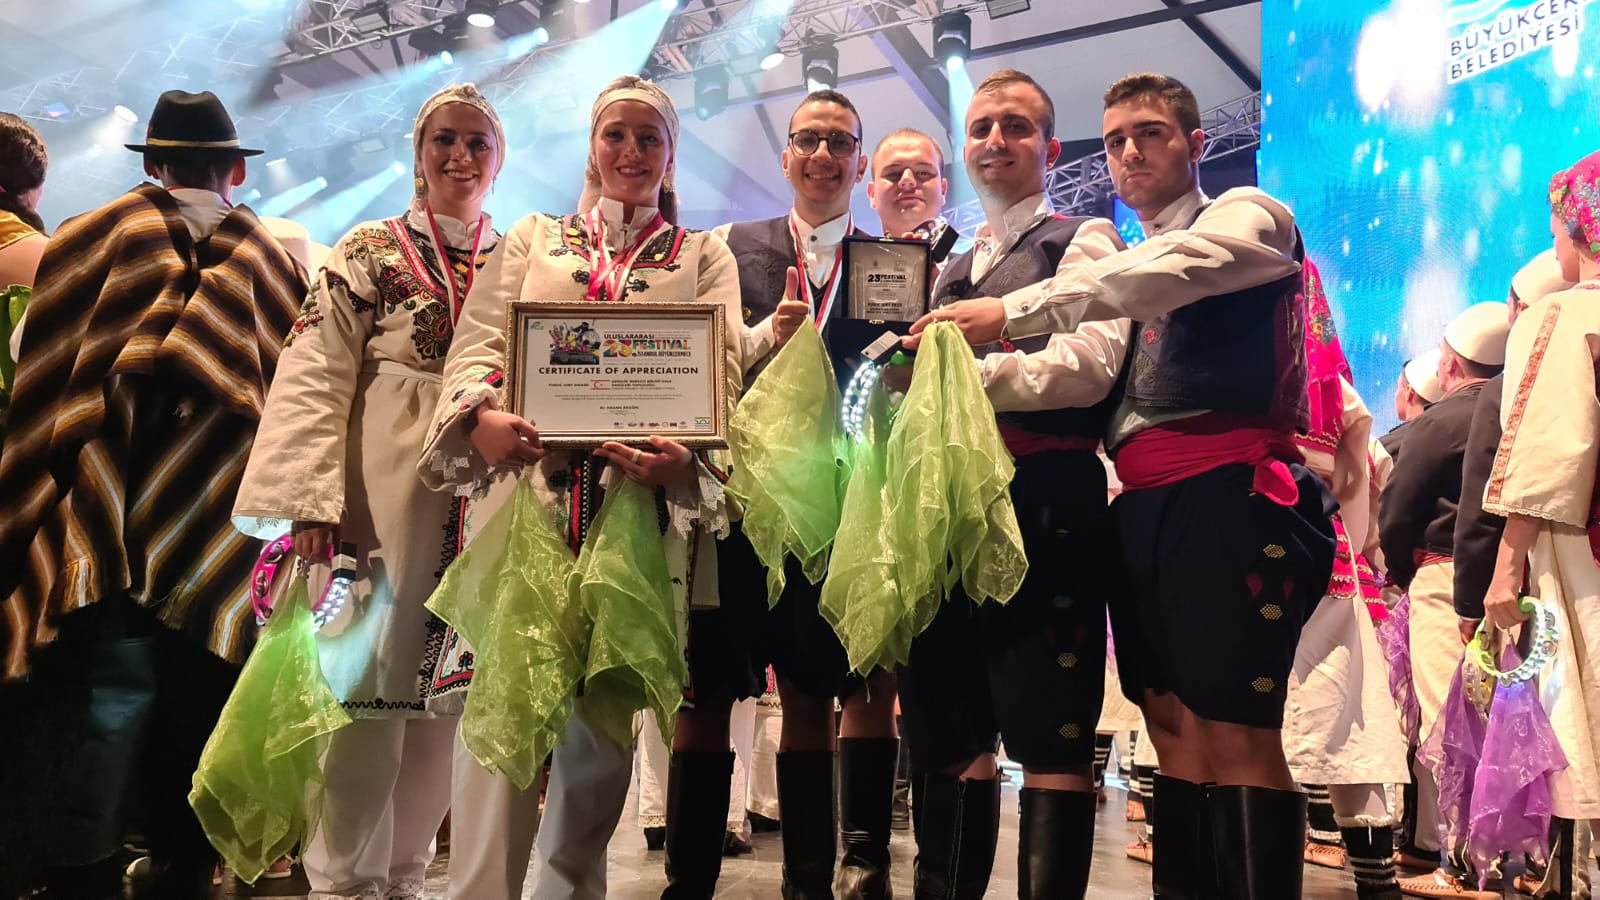 Gençlik Merkezi Birliği, İstanbul’da “Halk Jürisi” ödülü kazandı